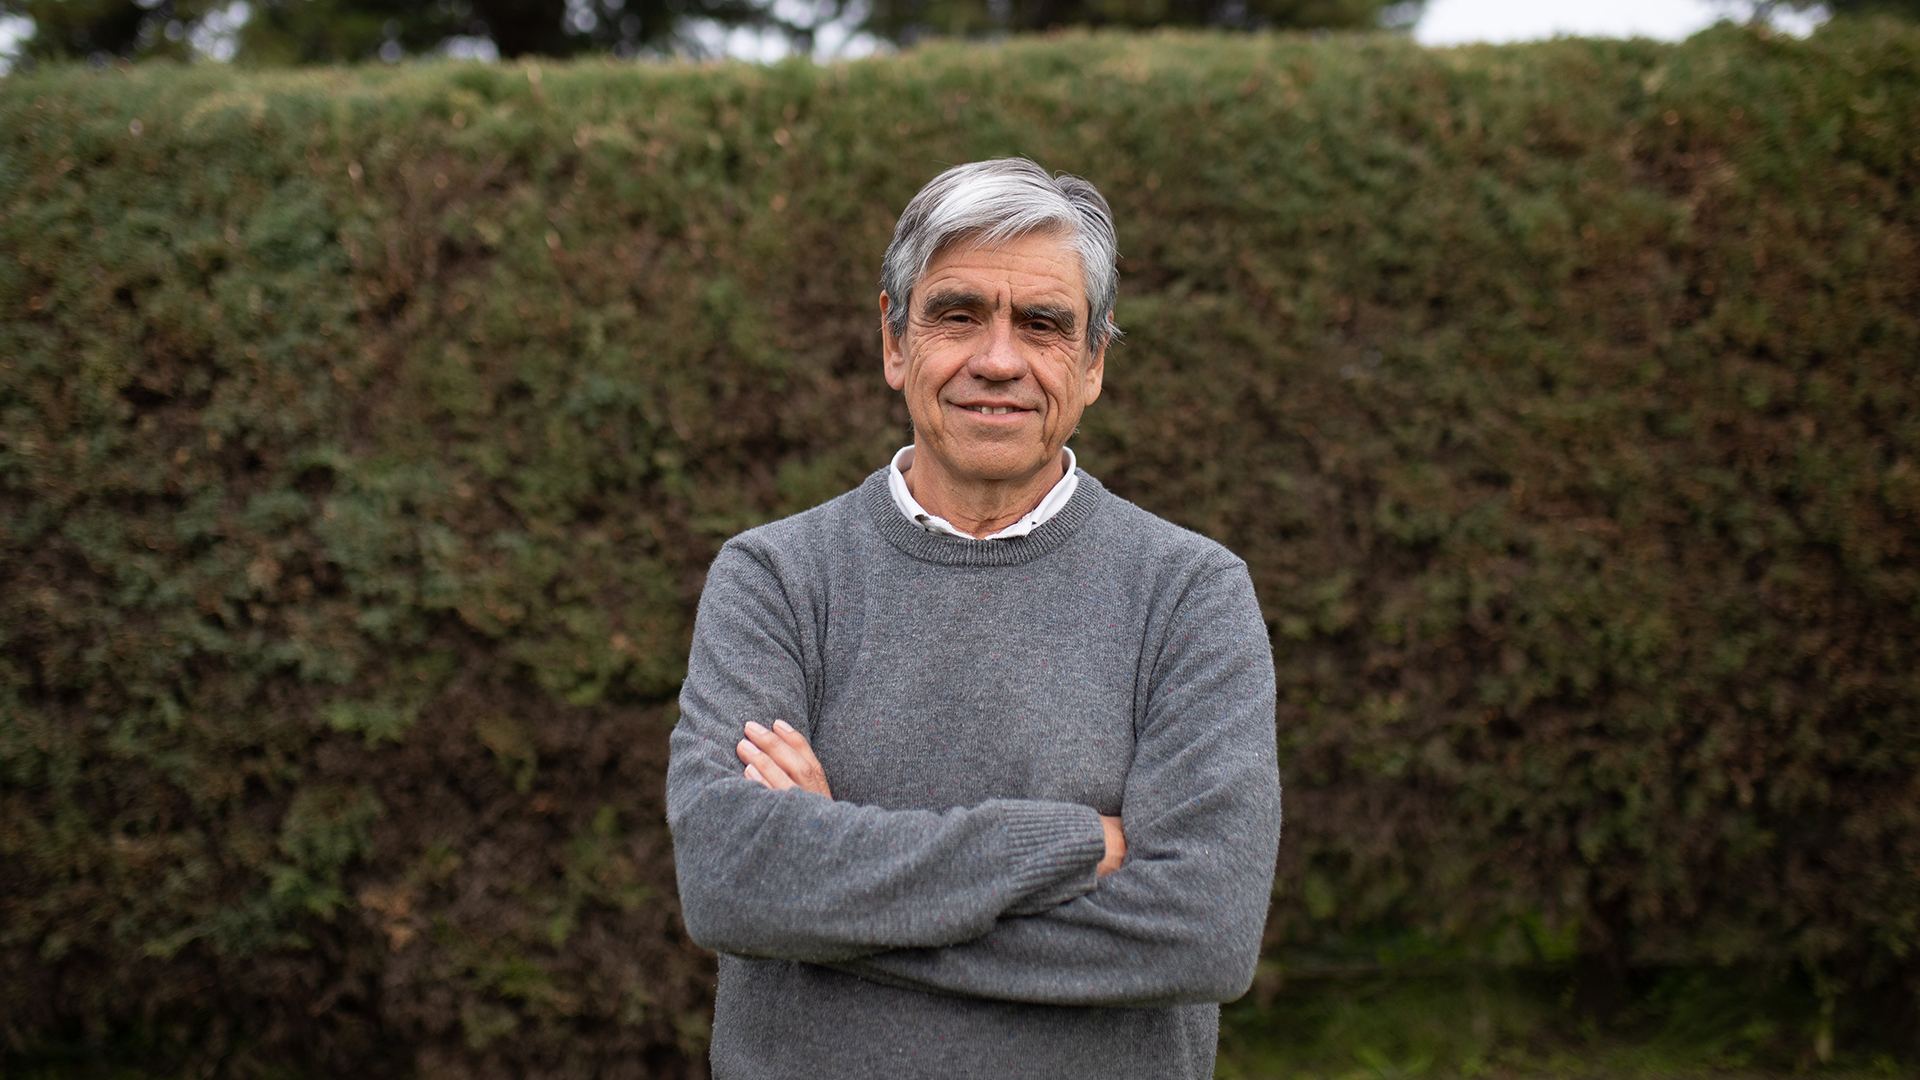 El ganador del Premio Fundación Bunge y Born 2021 es Diego de Mendoza, bioquímico y doctor en Bioquímica, por la Universidad Nacional de Tucumán (UNT), con posdoctorado en la University of Illinois (Estados Unidos)